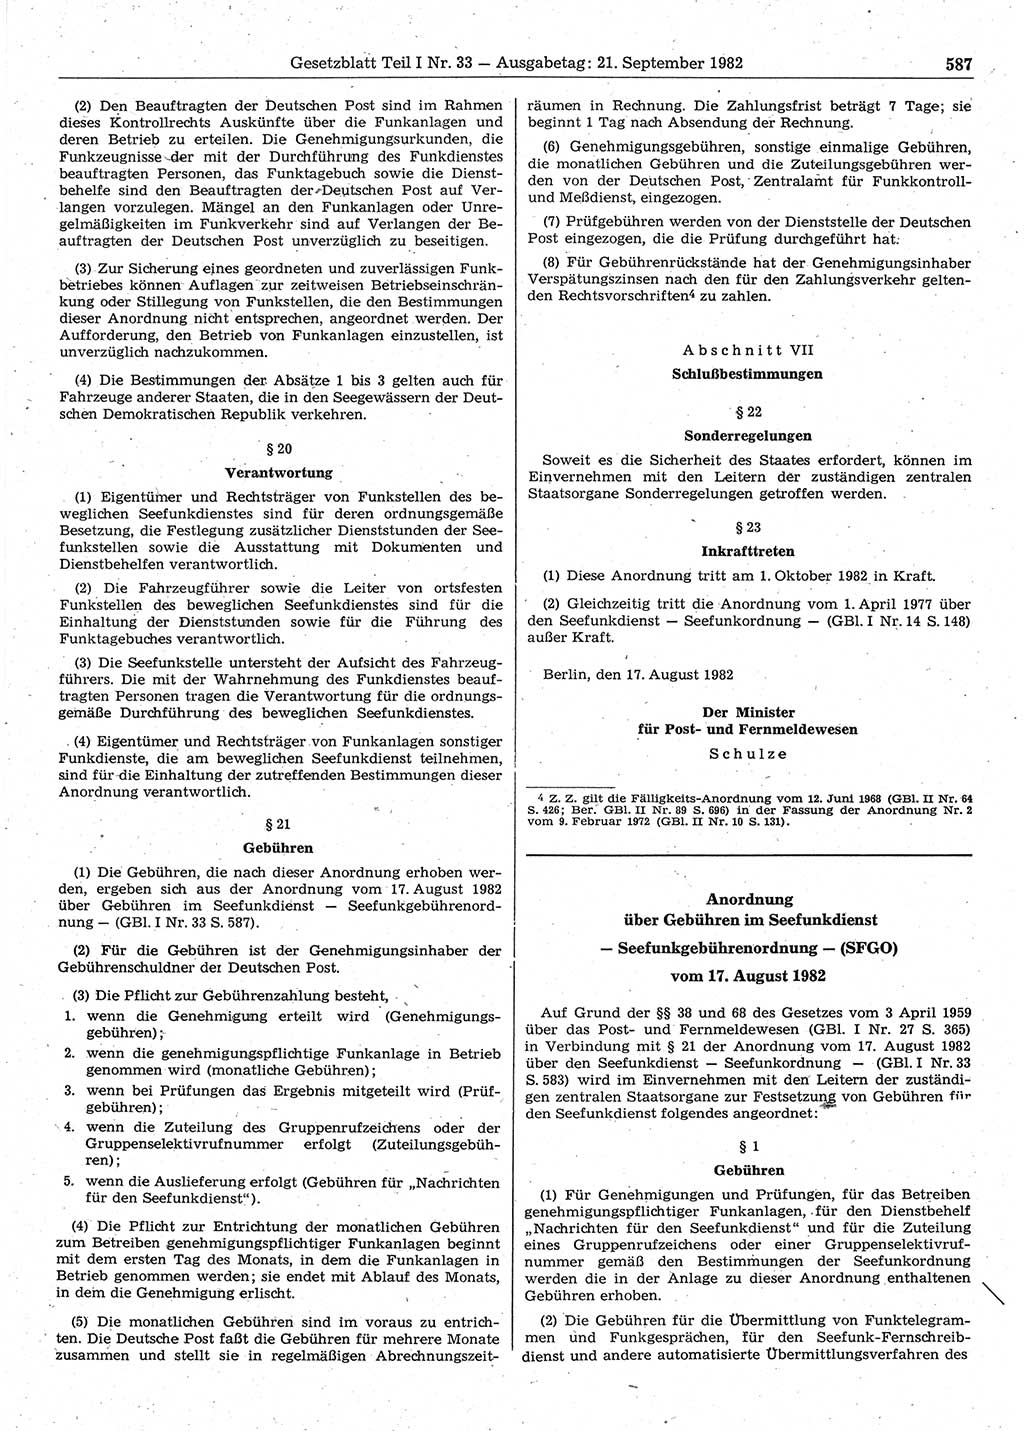 Gesetzblatt (GBl.) der Deutschen Demokratischen Republik (DDR) Teil Ⅰ 1982, Seite 587 (GBl. DDR Ⅰ 1982, S. 587)